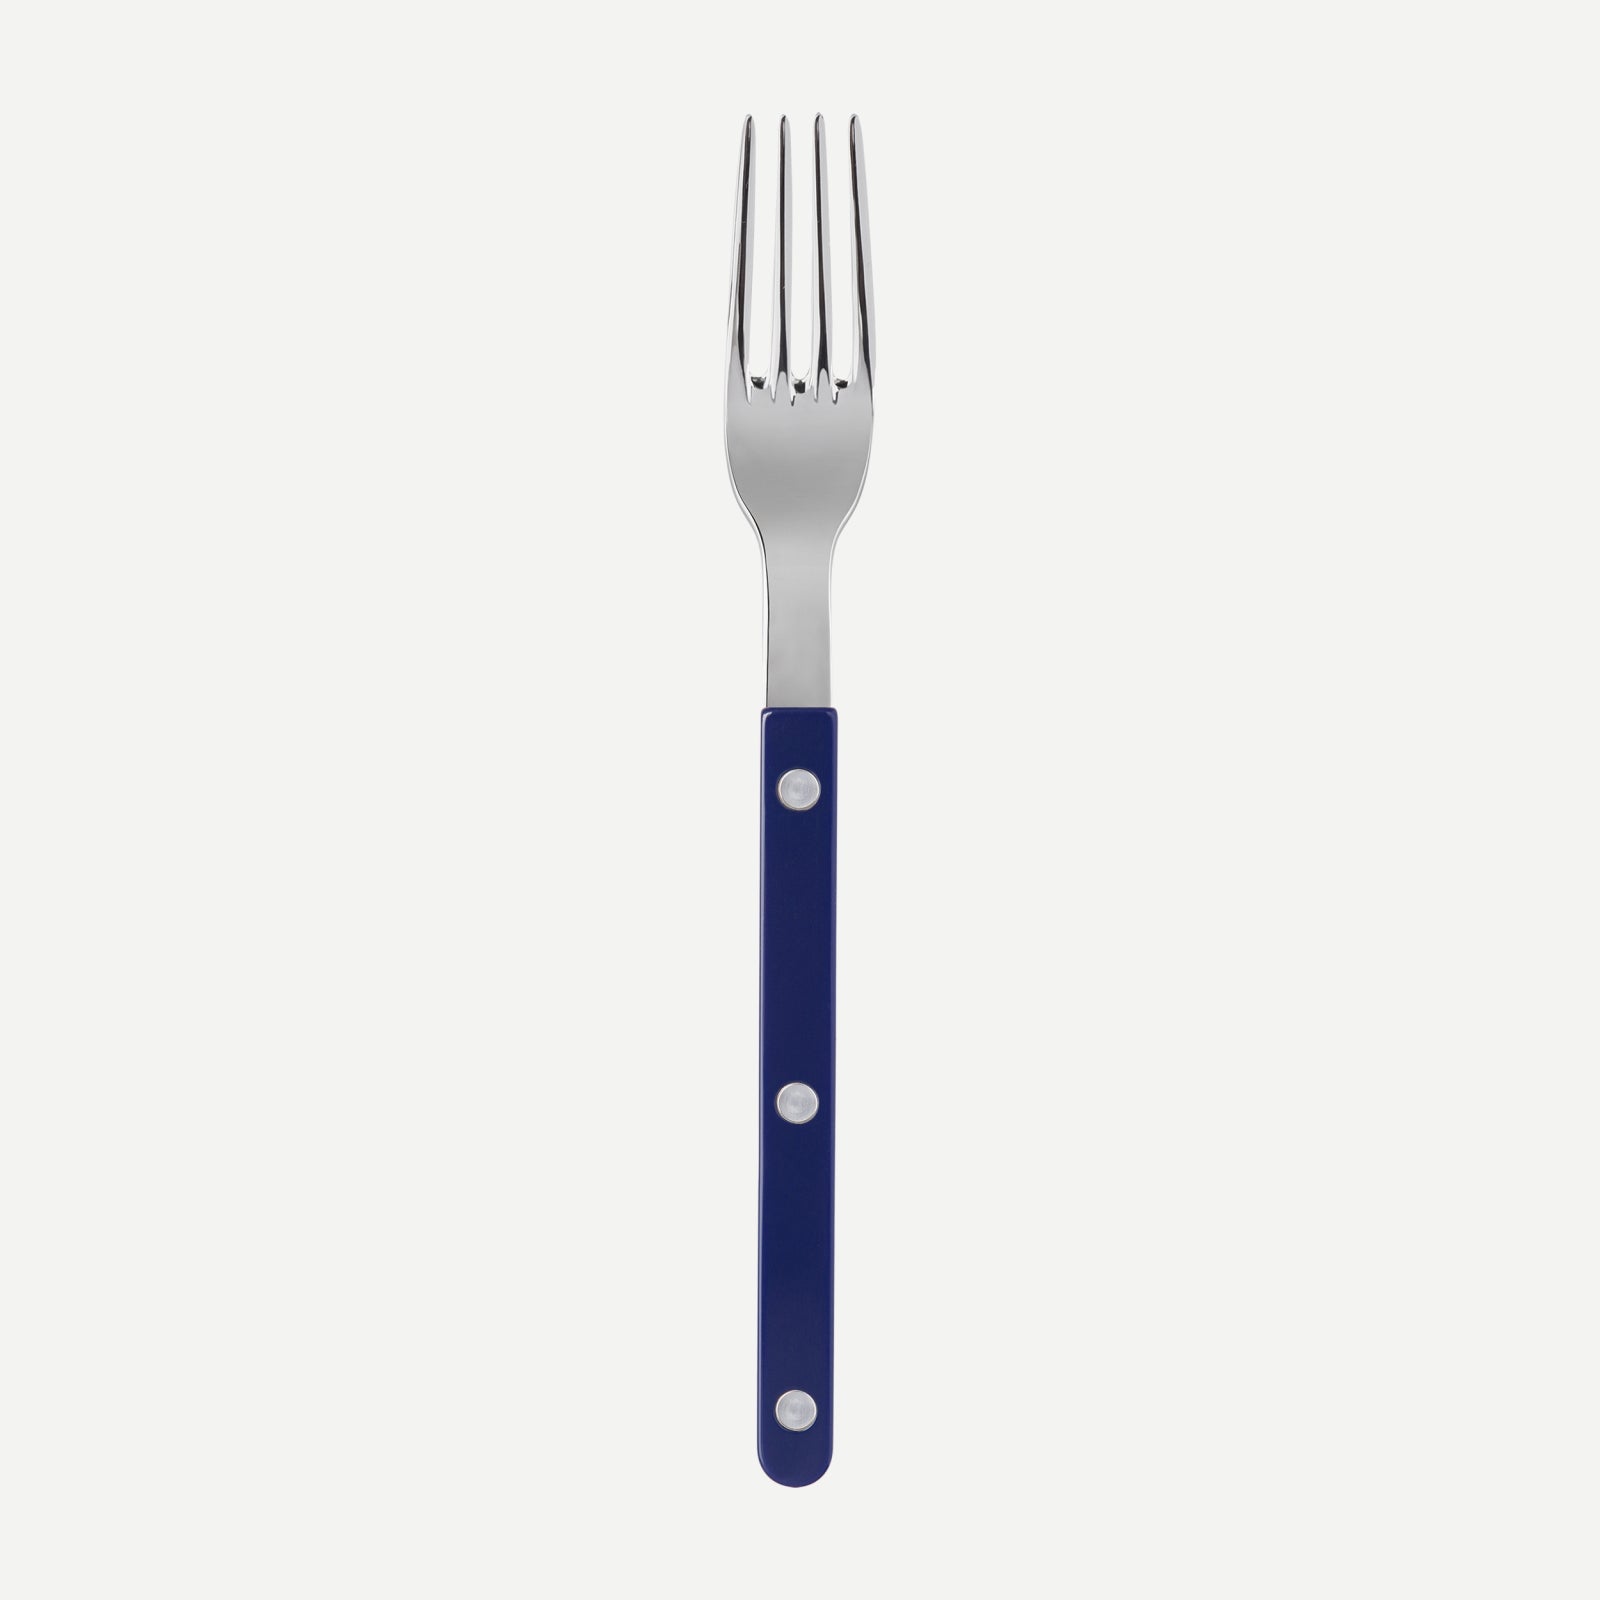 Dinner fork - Bistrot shiny solid - Navy blue